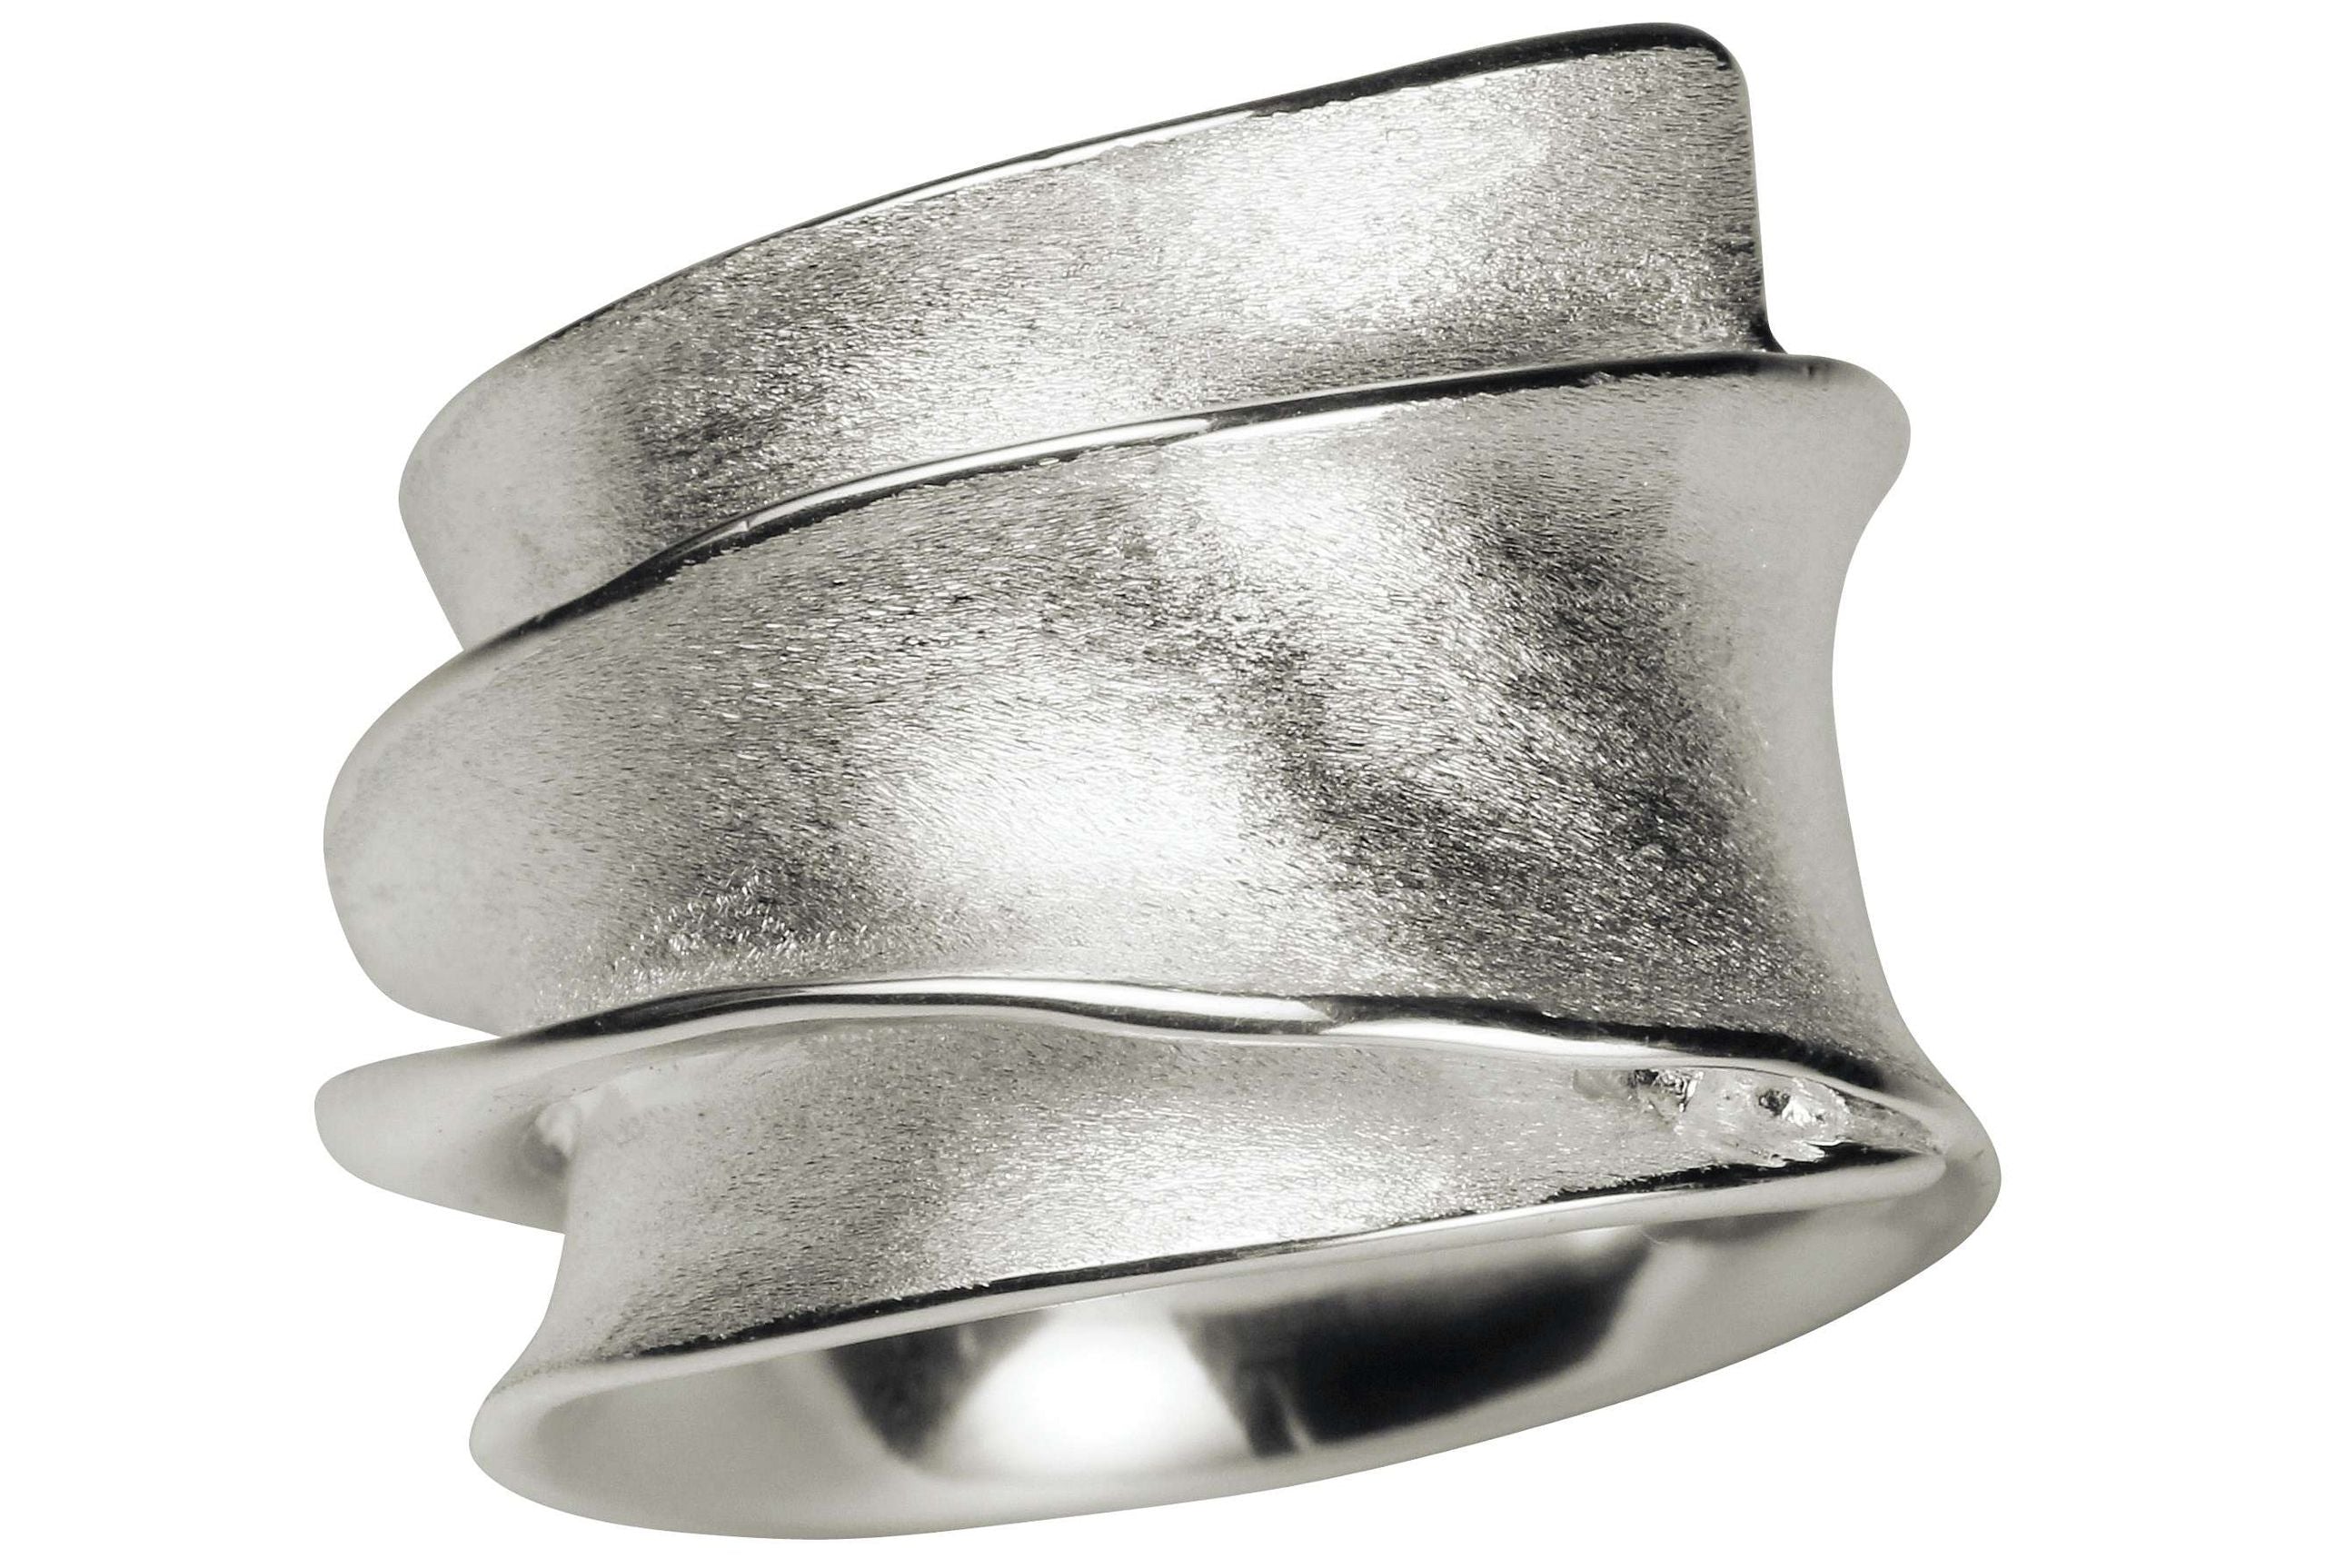 Ausdrucksstarker Wickelring aus Silber für Damen, der durch markantes Design und sanft nach außen gewölbte Kanten auszeichnet.